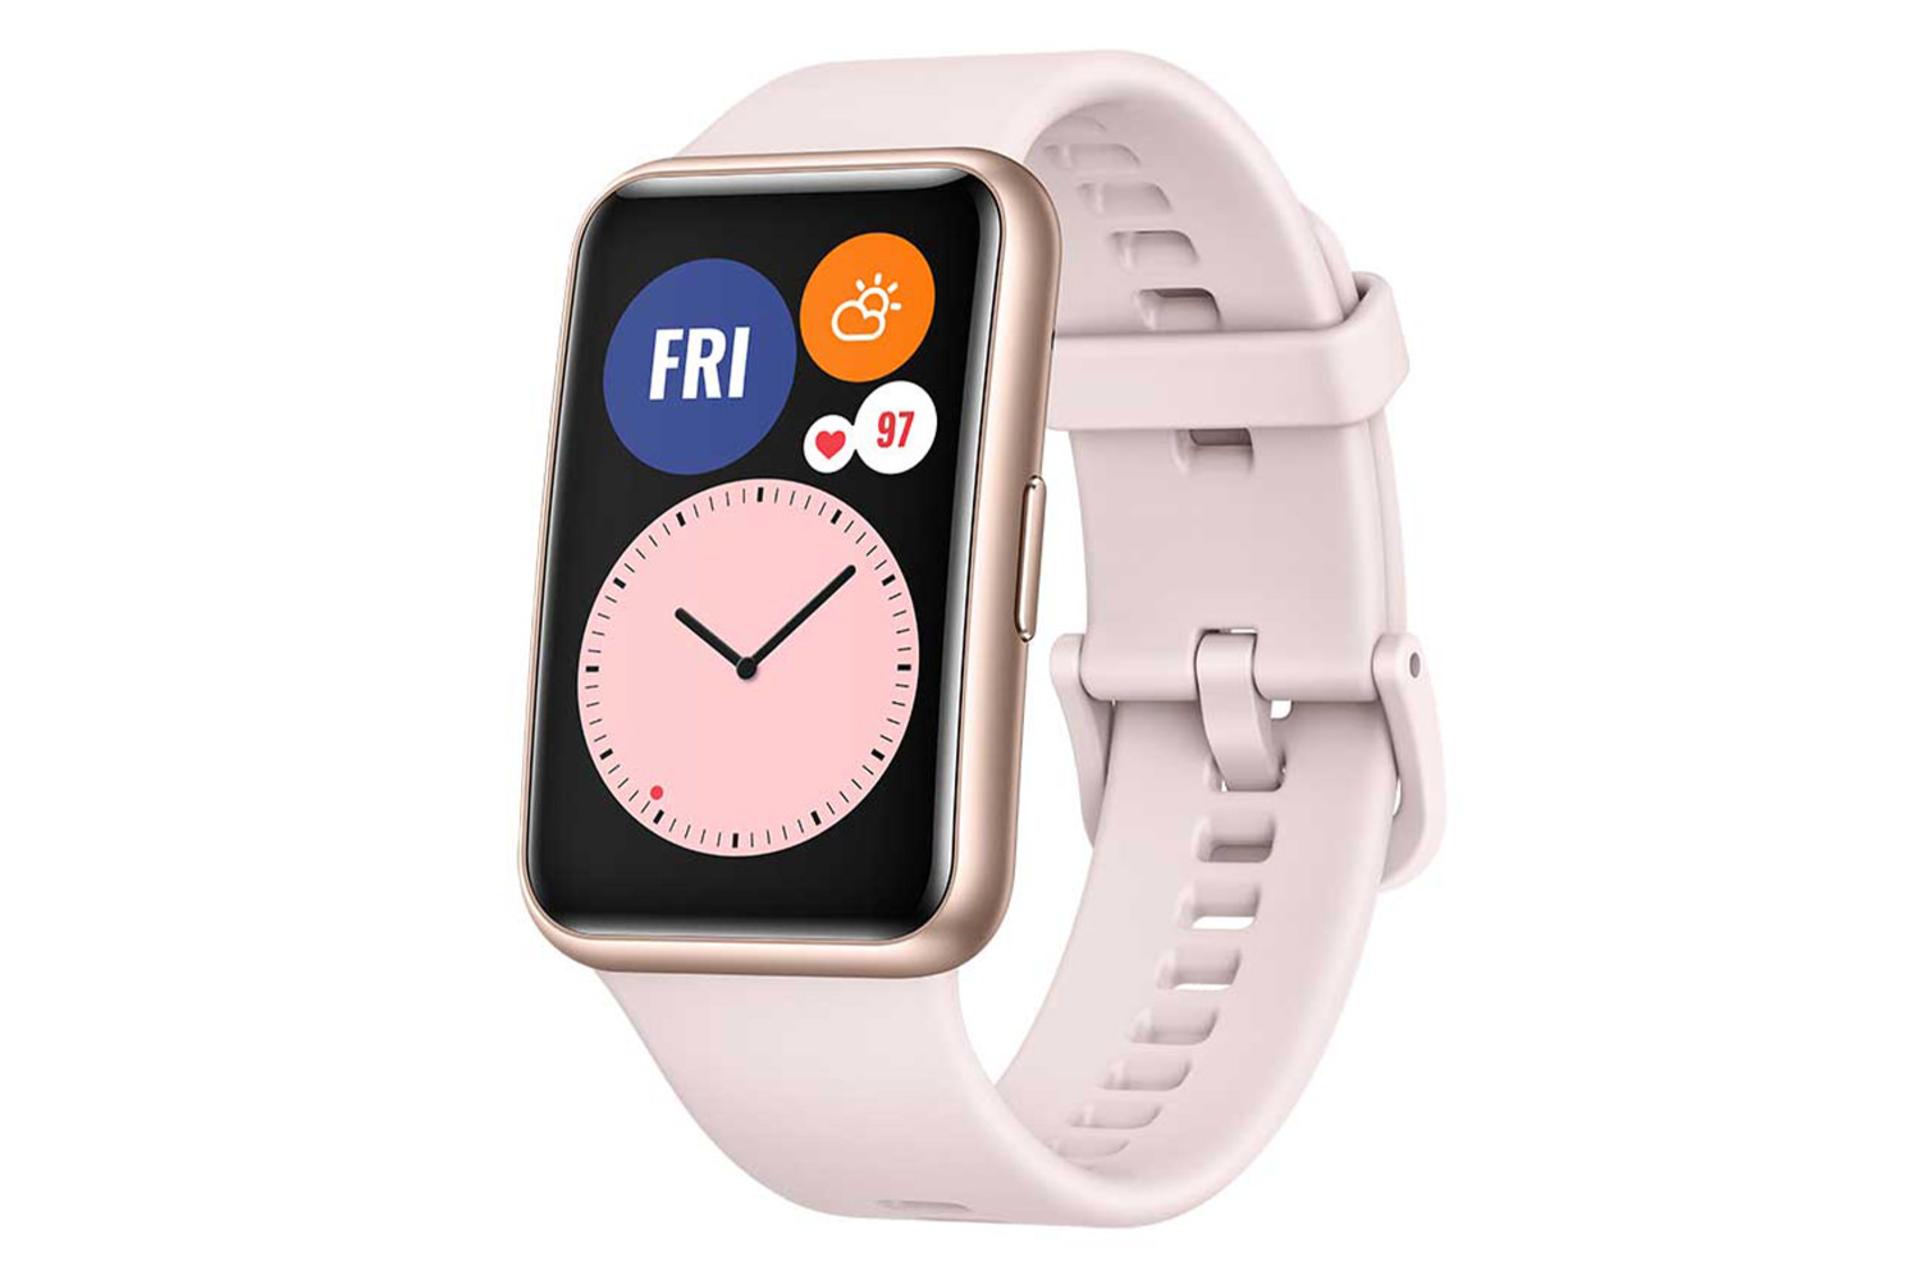 ساعت هوشمند Huawei Watch Fit در حال نمای ساعت - تاریخ - آب و هوا و ضربان قلب / هواوی واچ فیت